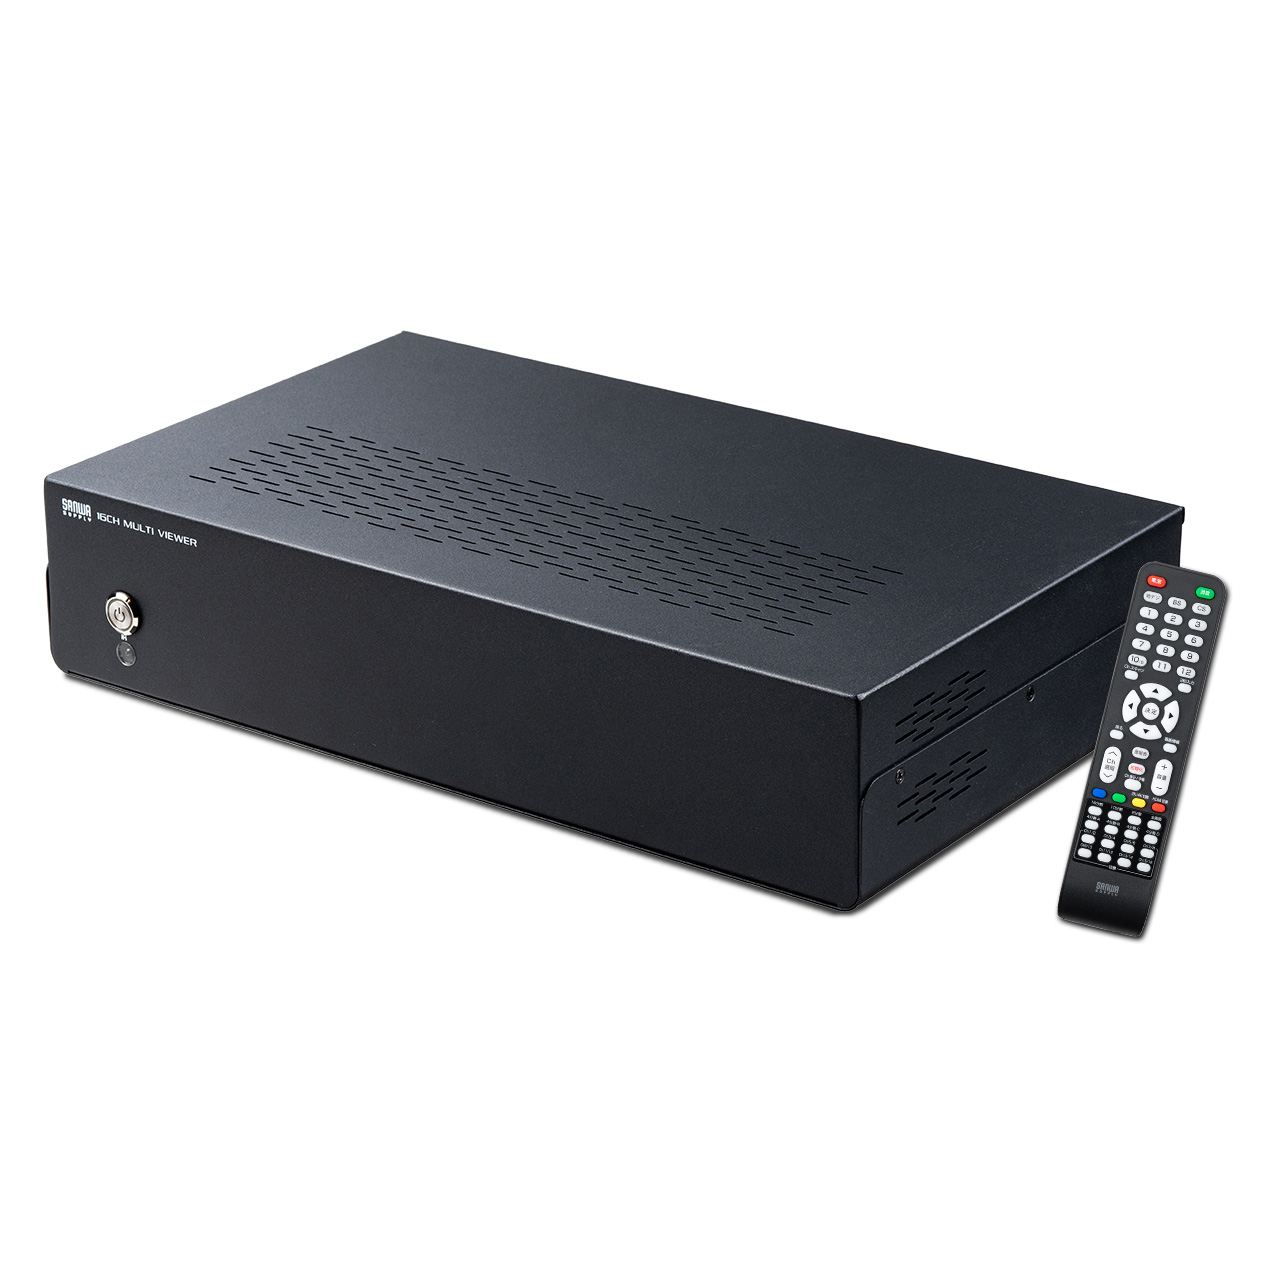 地デジチューナー 16番組同時視聴 16分割 10分割 8分割 4分割 全画面 地デジ放送 BS/CS放送 STB（CATV） HDMI入力×2ポート 400-1SG008